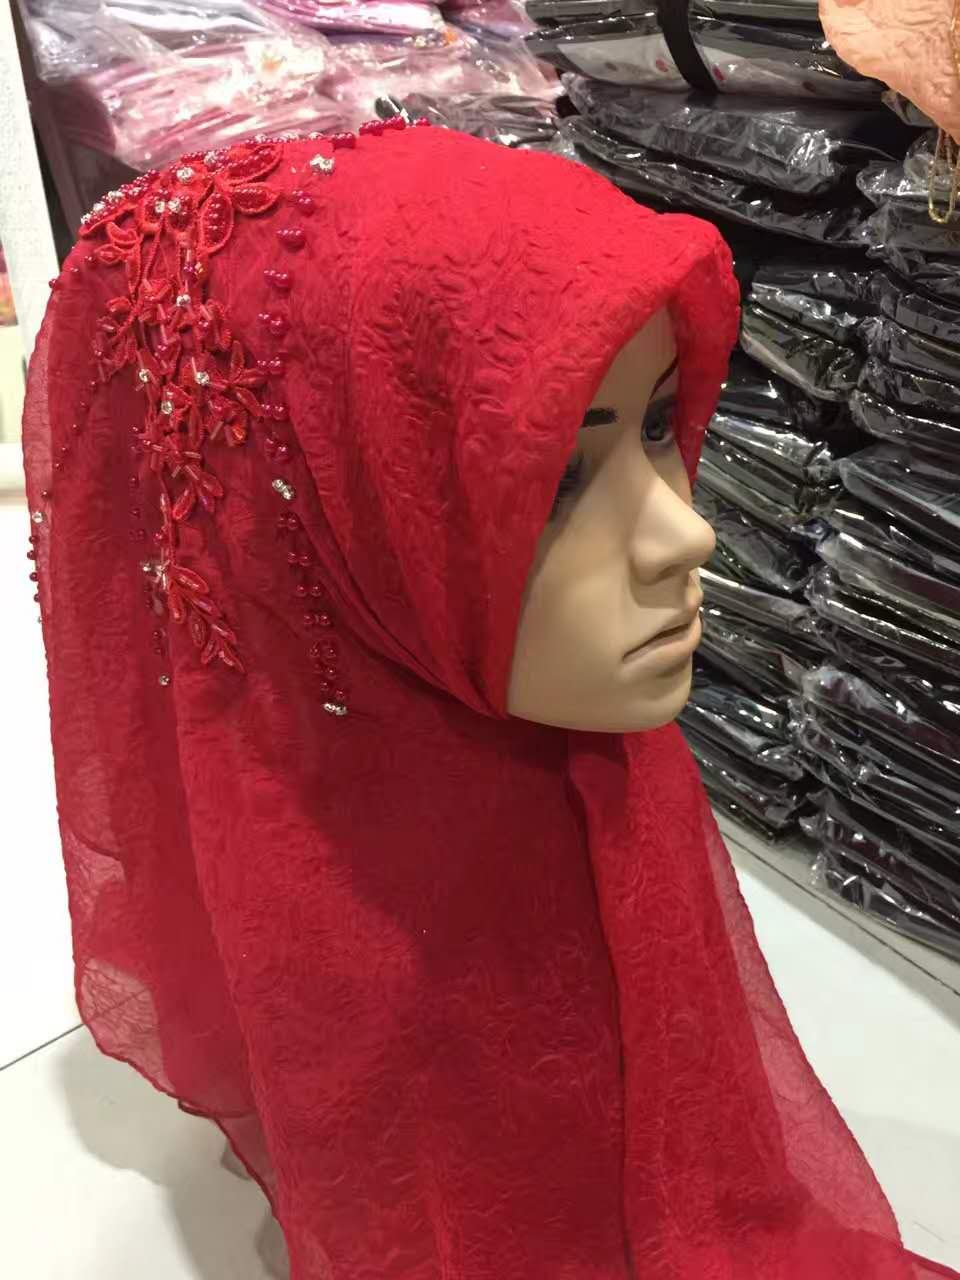 穆斯林女士头巾方巾回族串珠纱巾伊斯兰礼拜盖头围巾头纱丝巾 紫罗兰